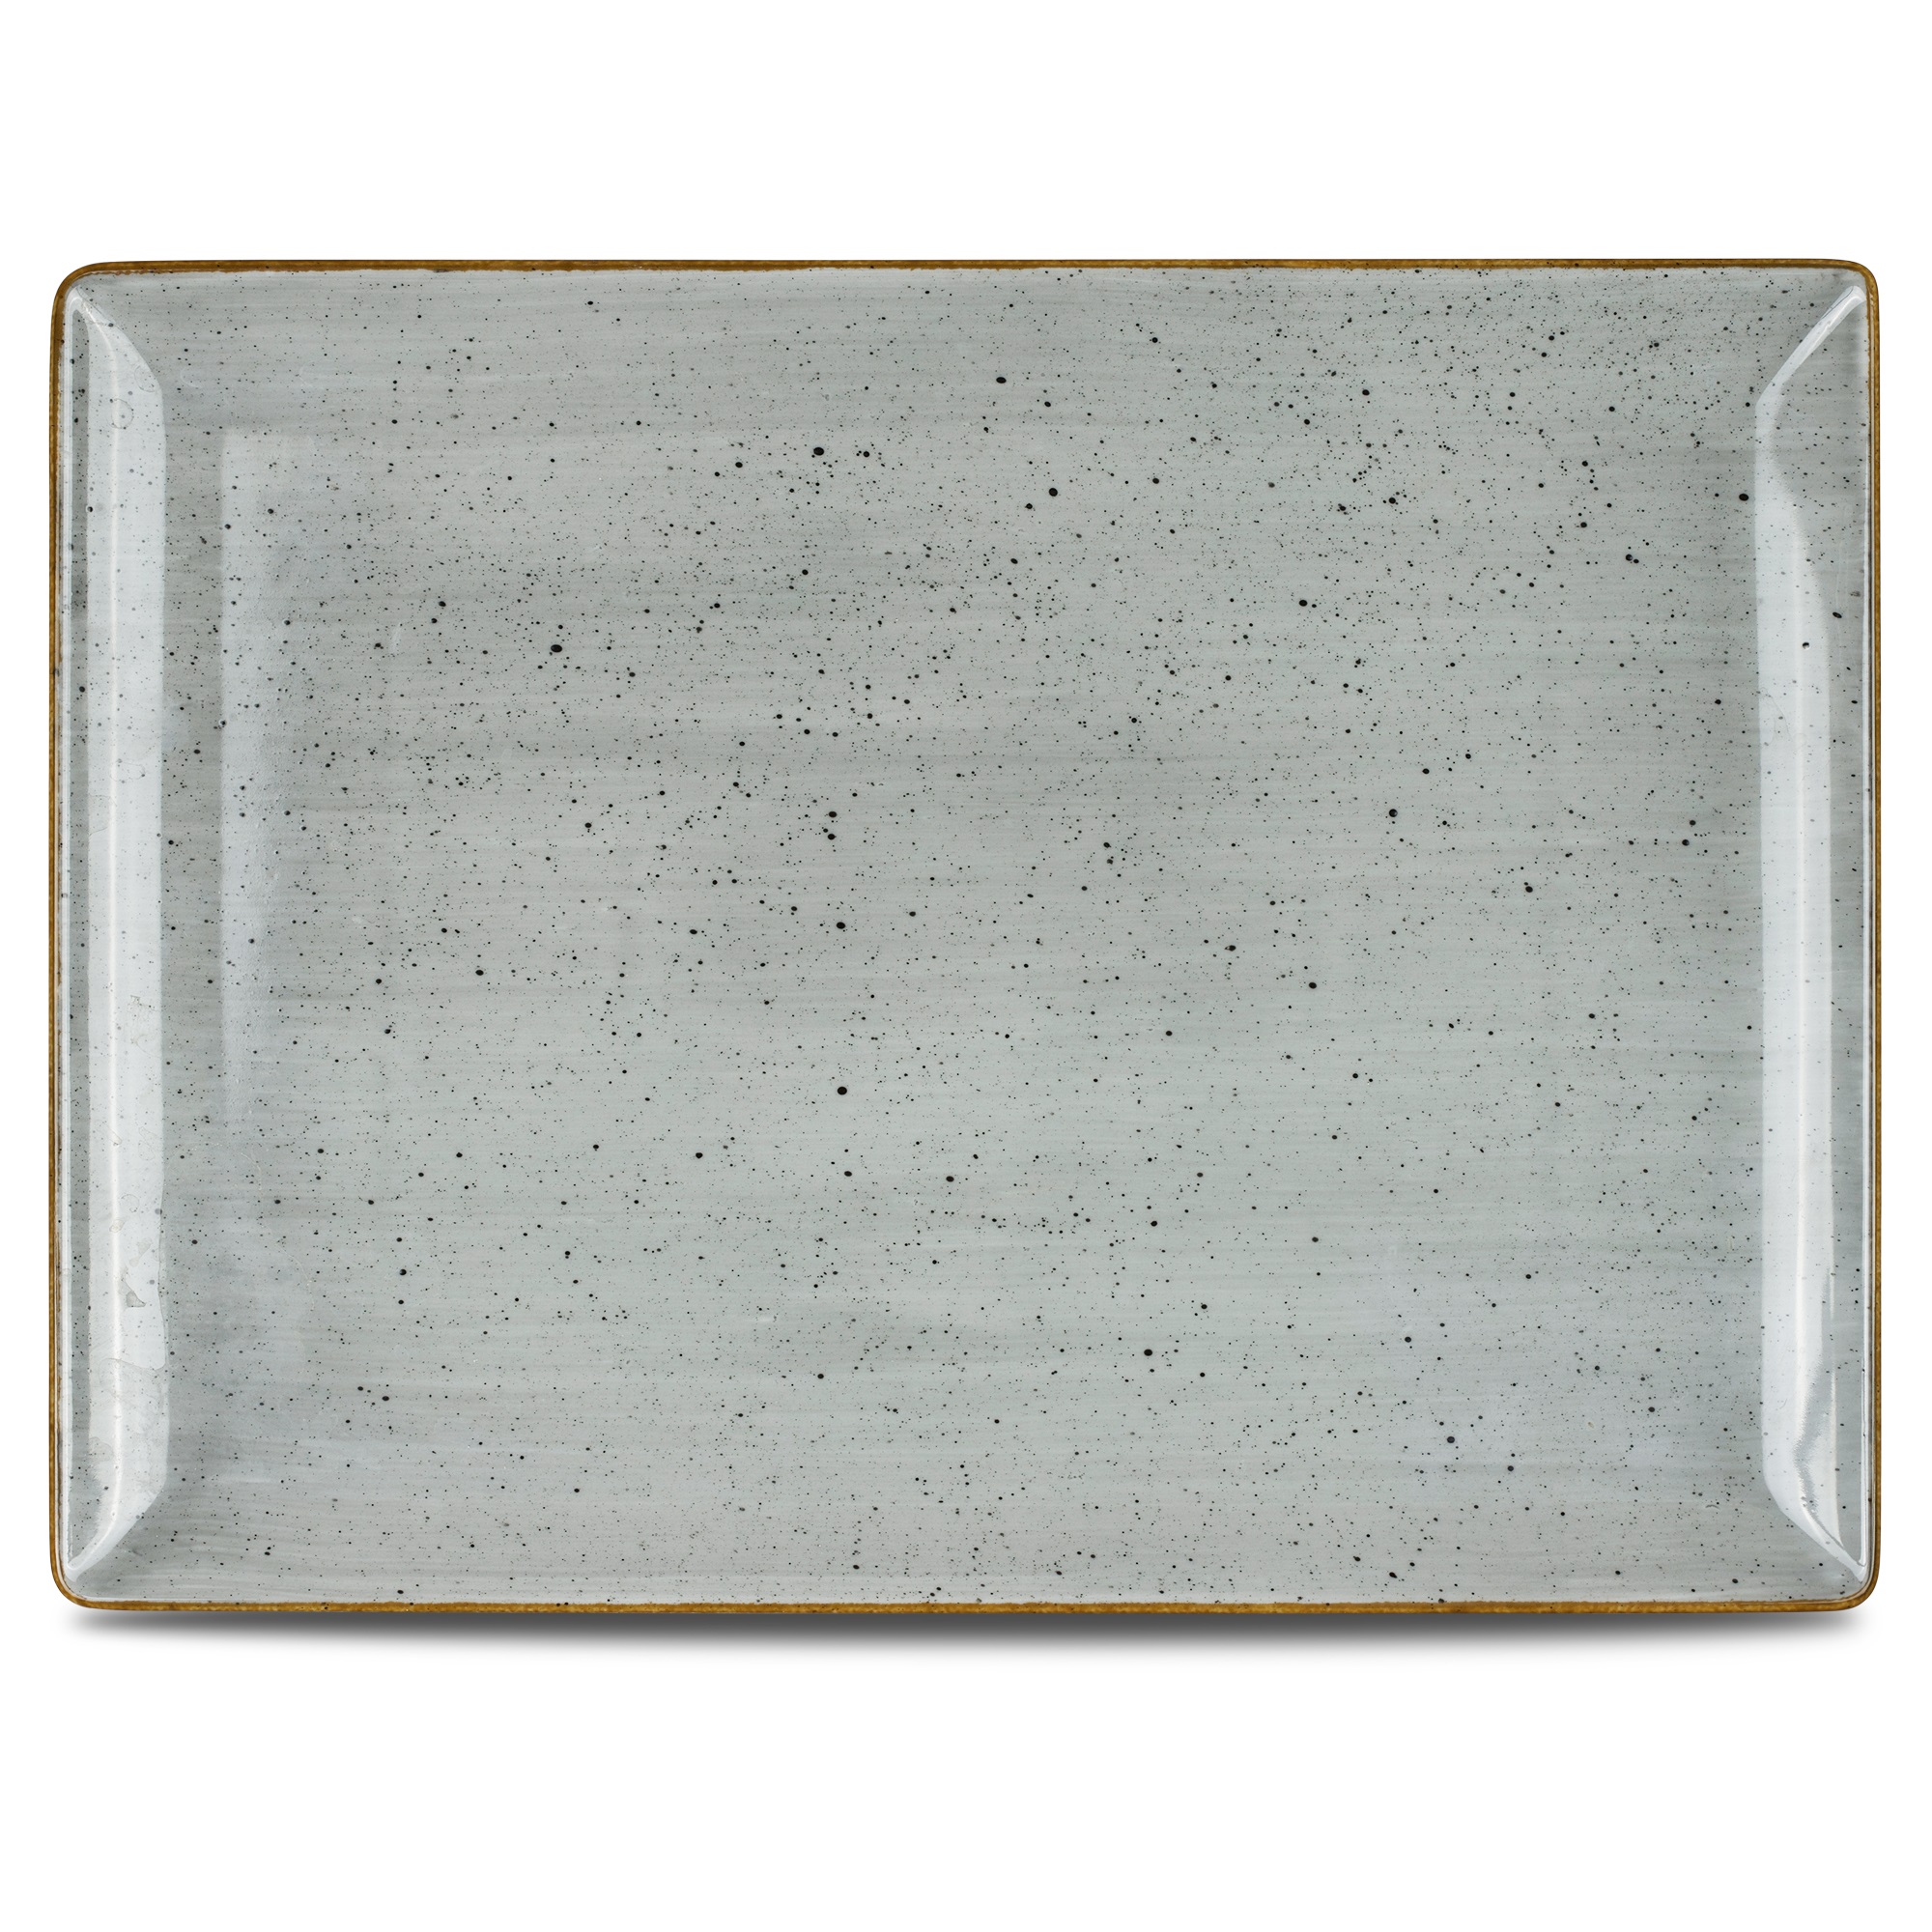 Platte eckig 35,5x26,5cm CLASSIC dusty grey